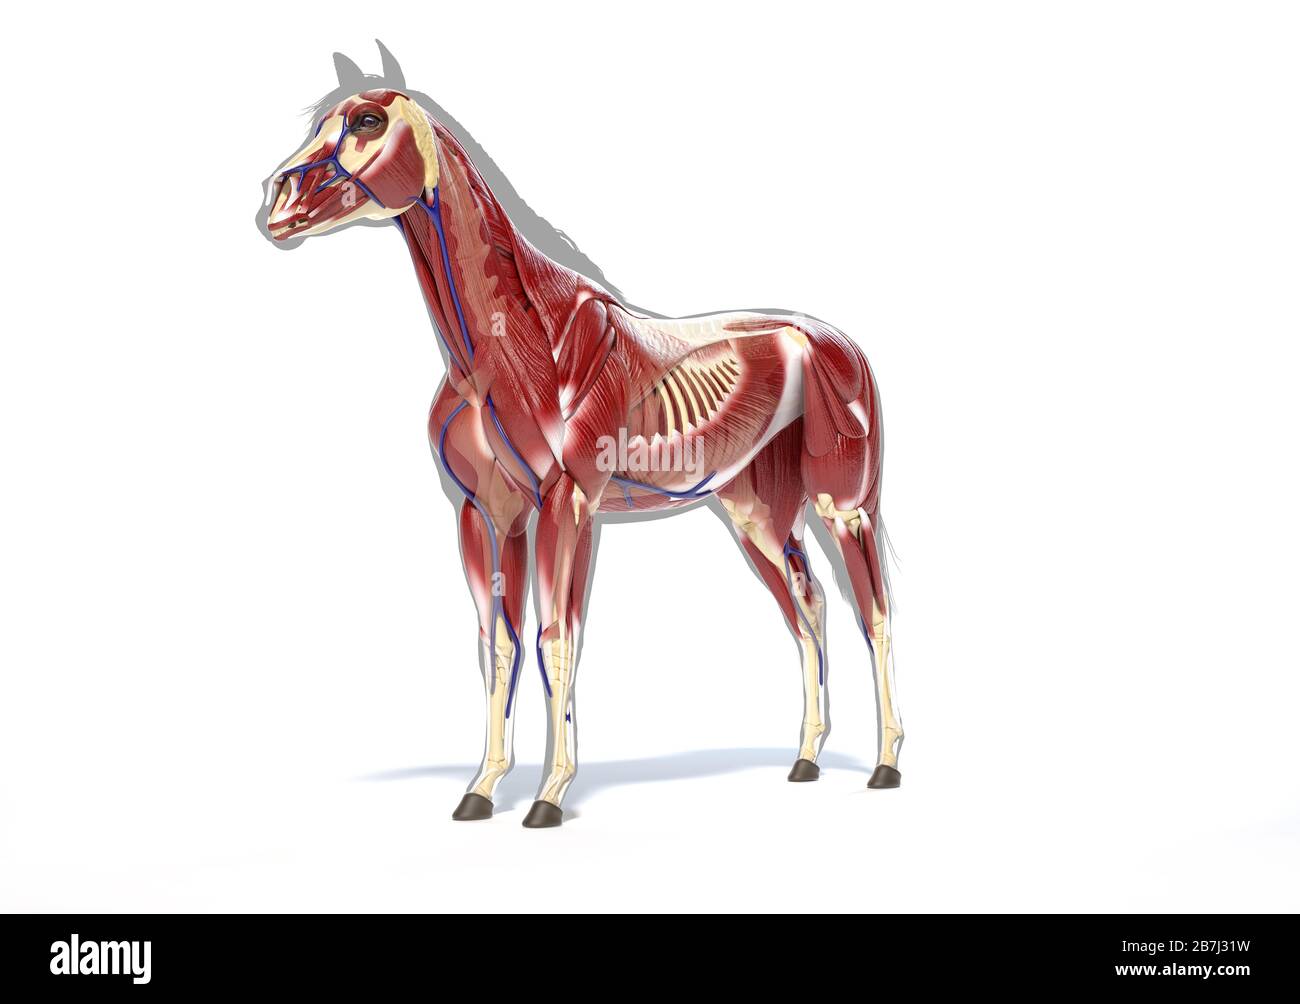 Pferdeanatomie. Muskulöses System über grauer Silhouette, Vorderansicht - Seitenansicht auf weißem Hintergrund. Beschneidungspfad enthalten. Stockfoto